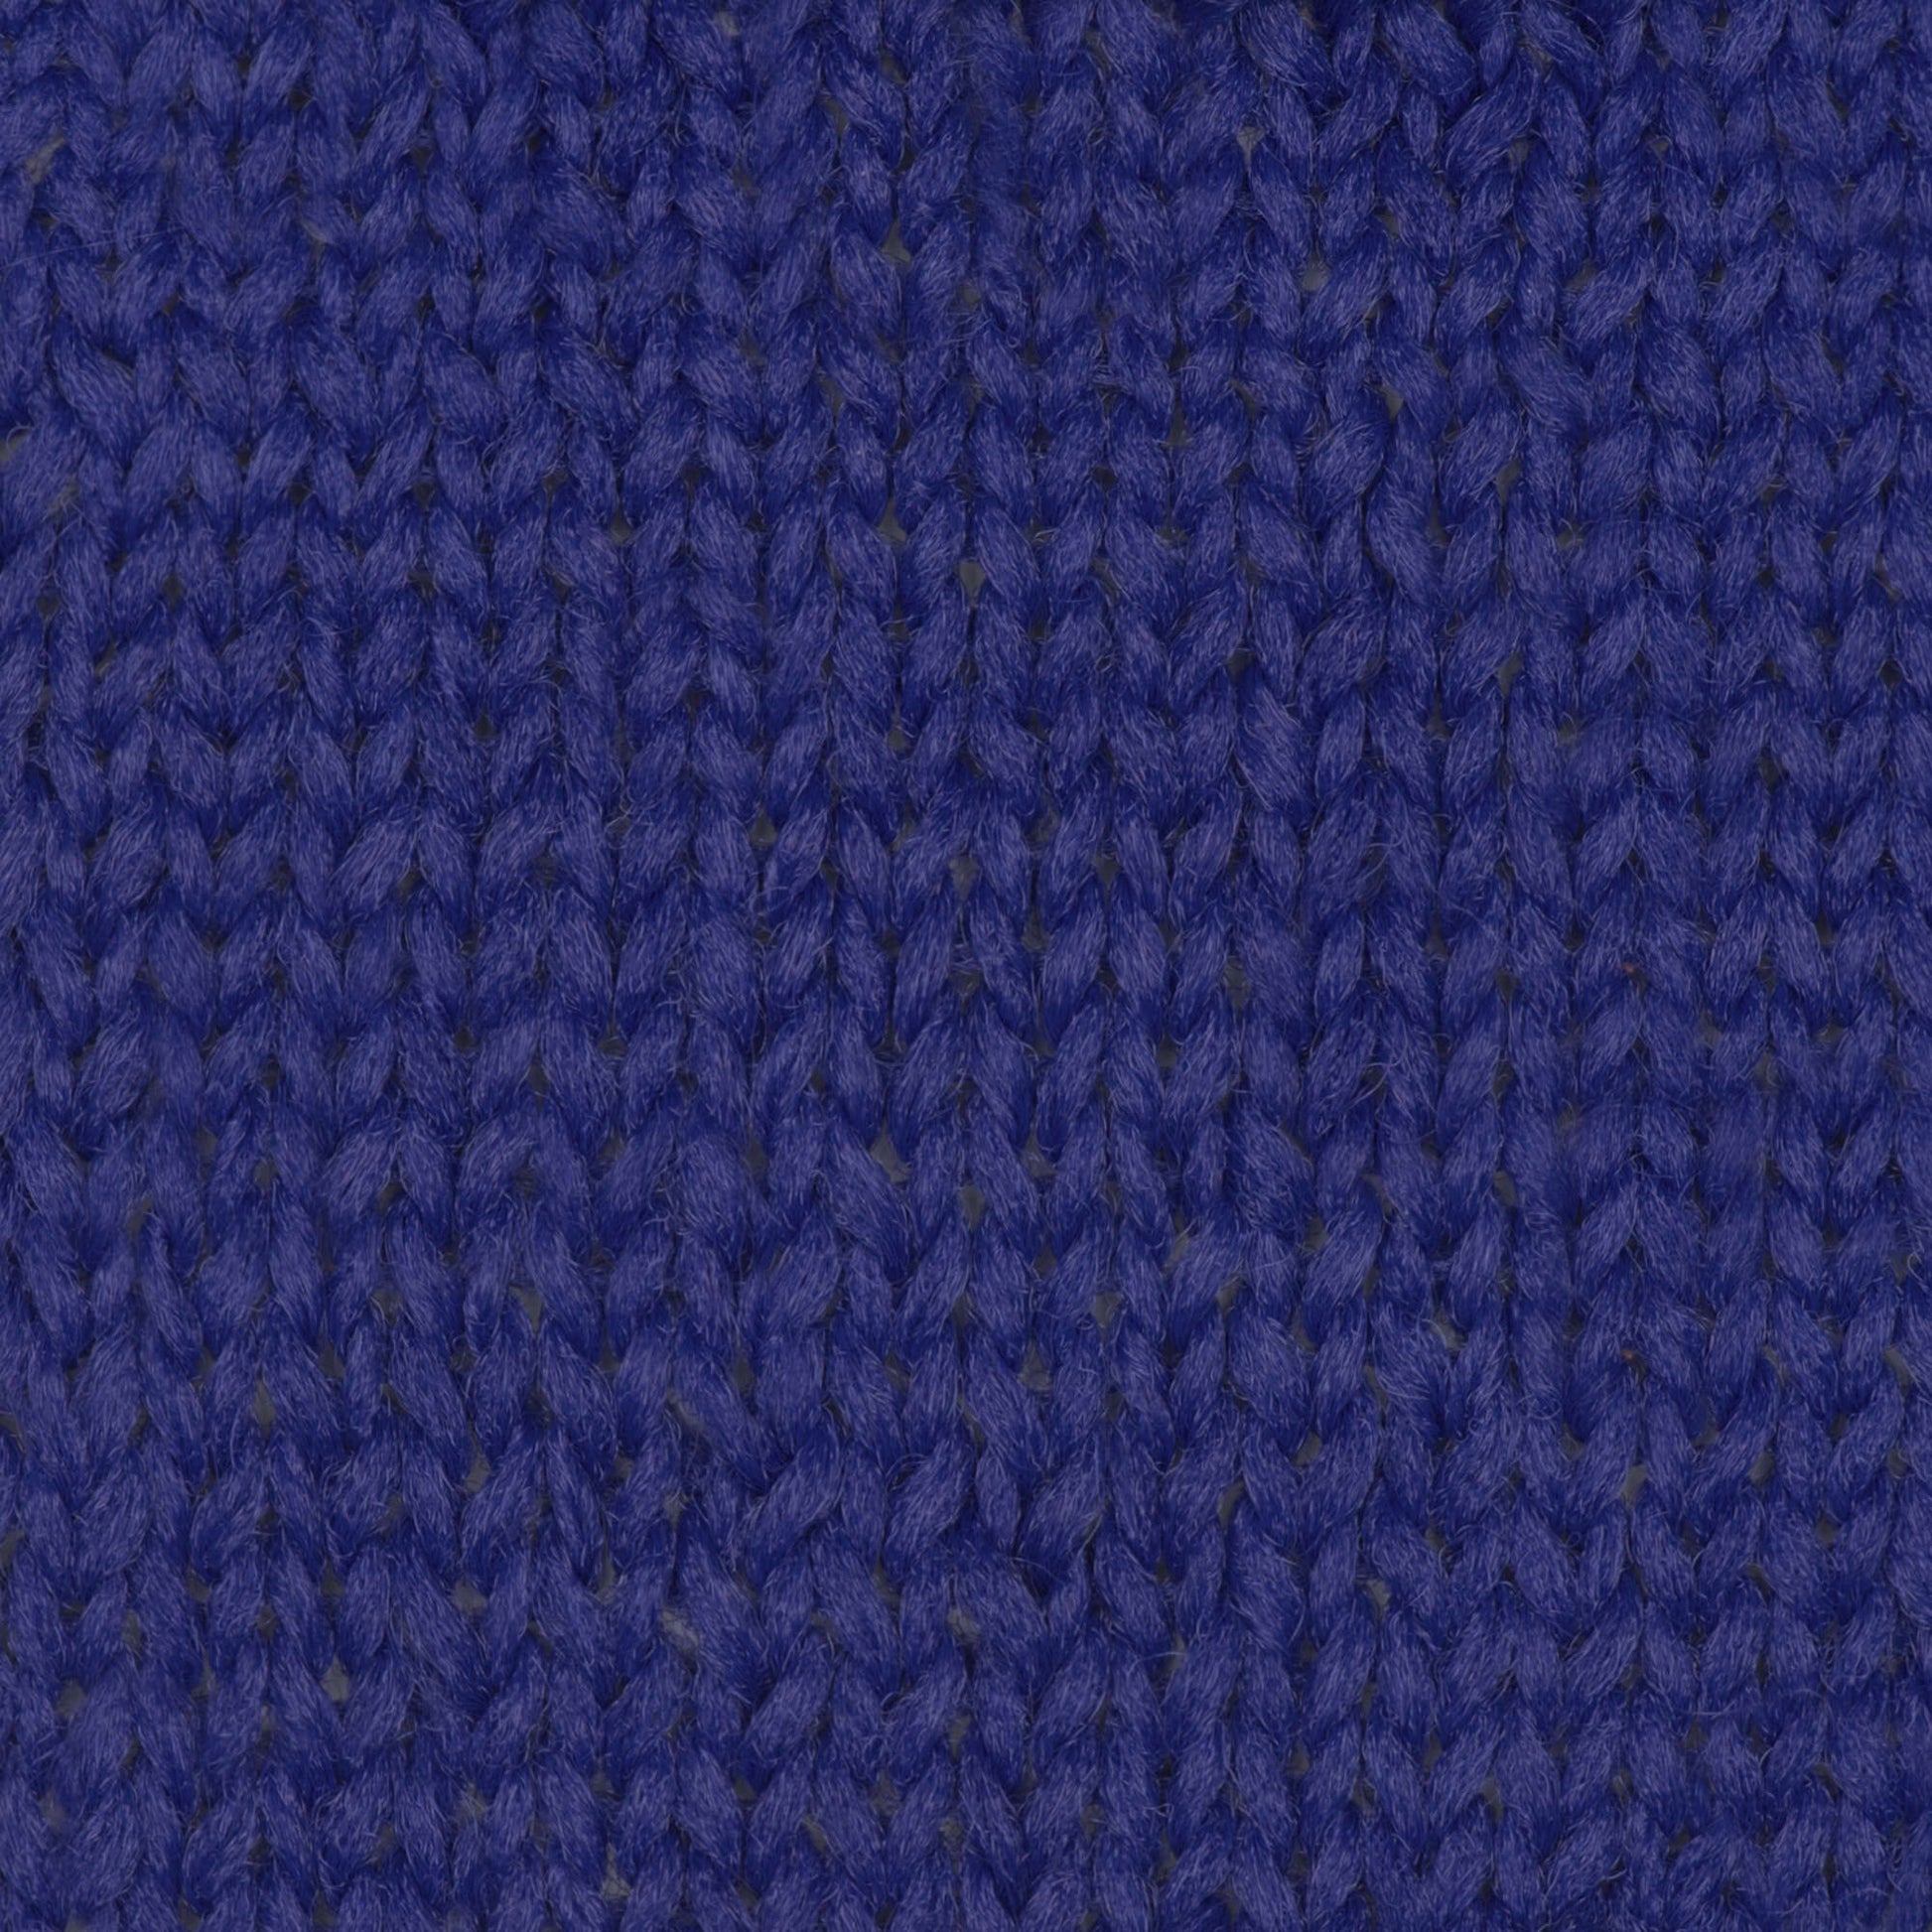 Phentex Slipper & Craft Yarn - Discontinued Shades Royal